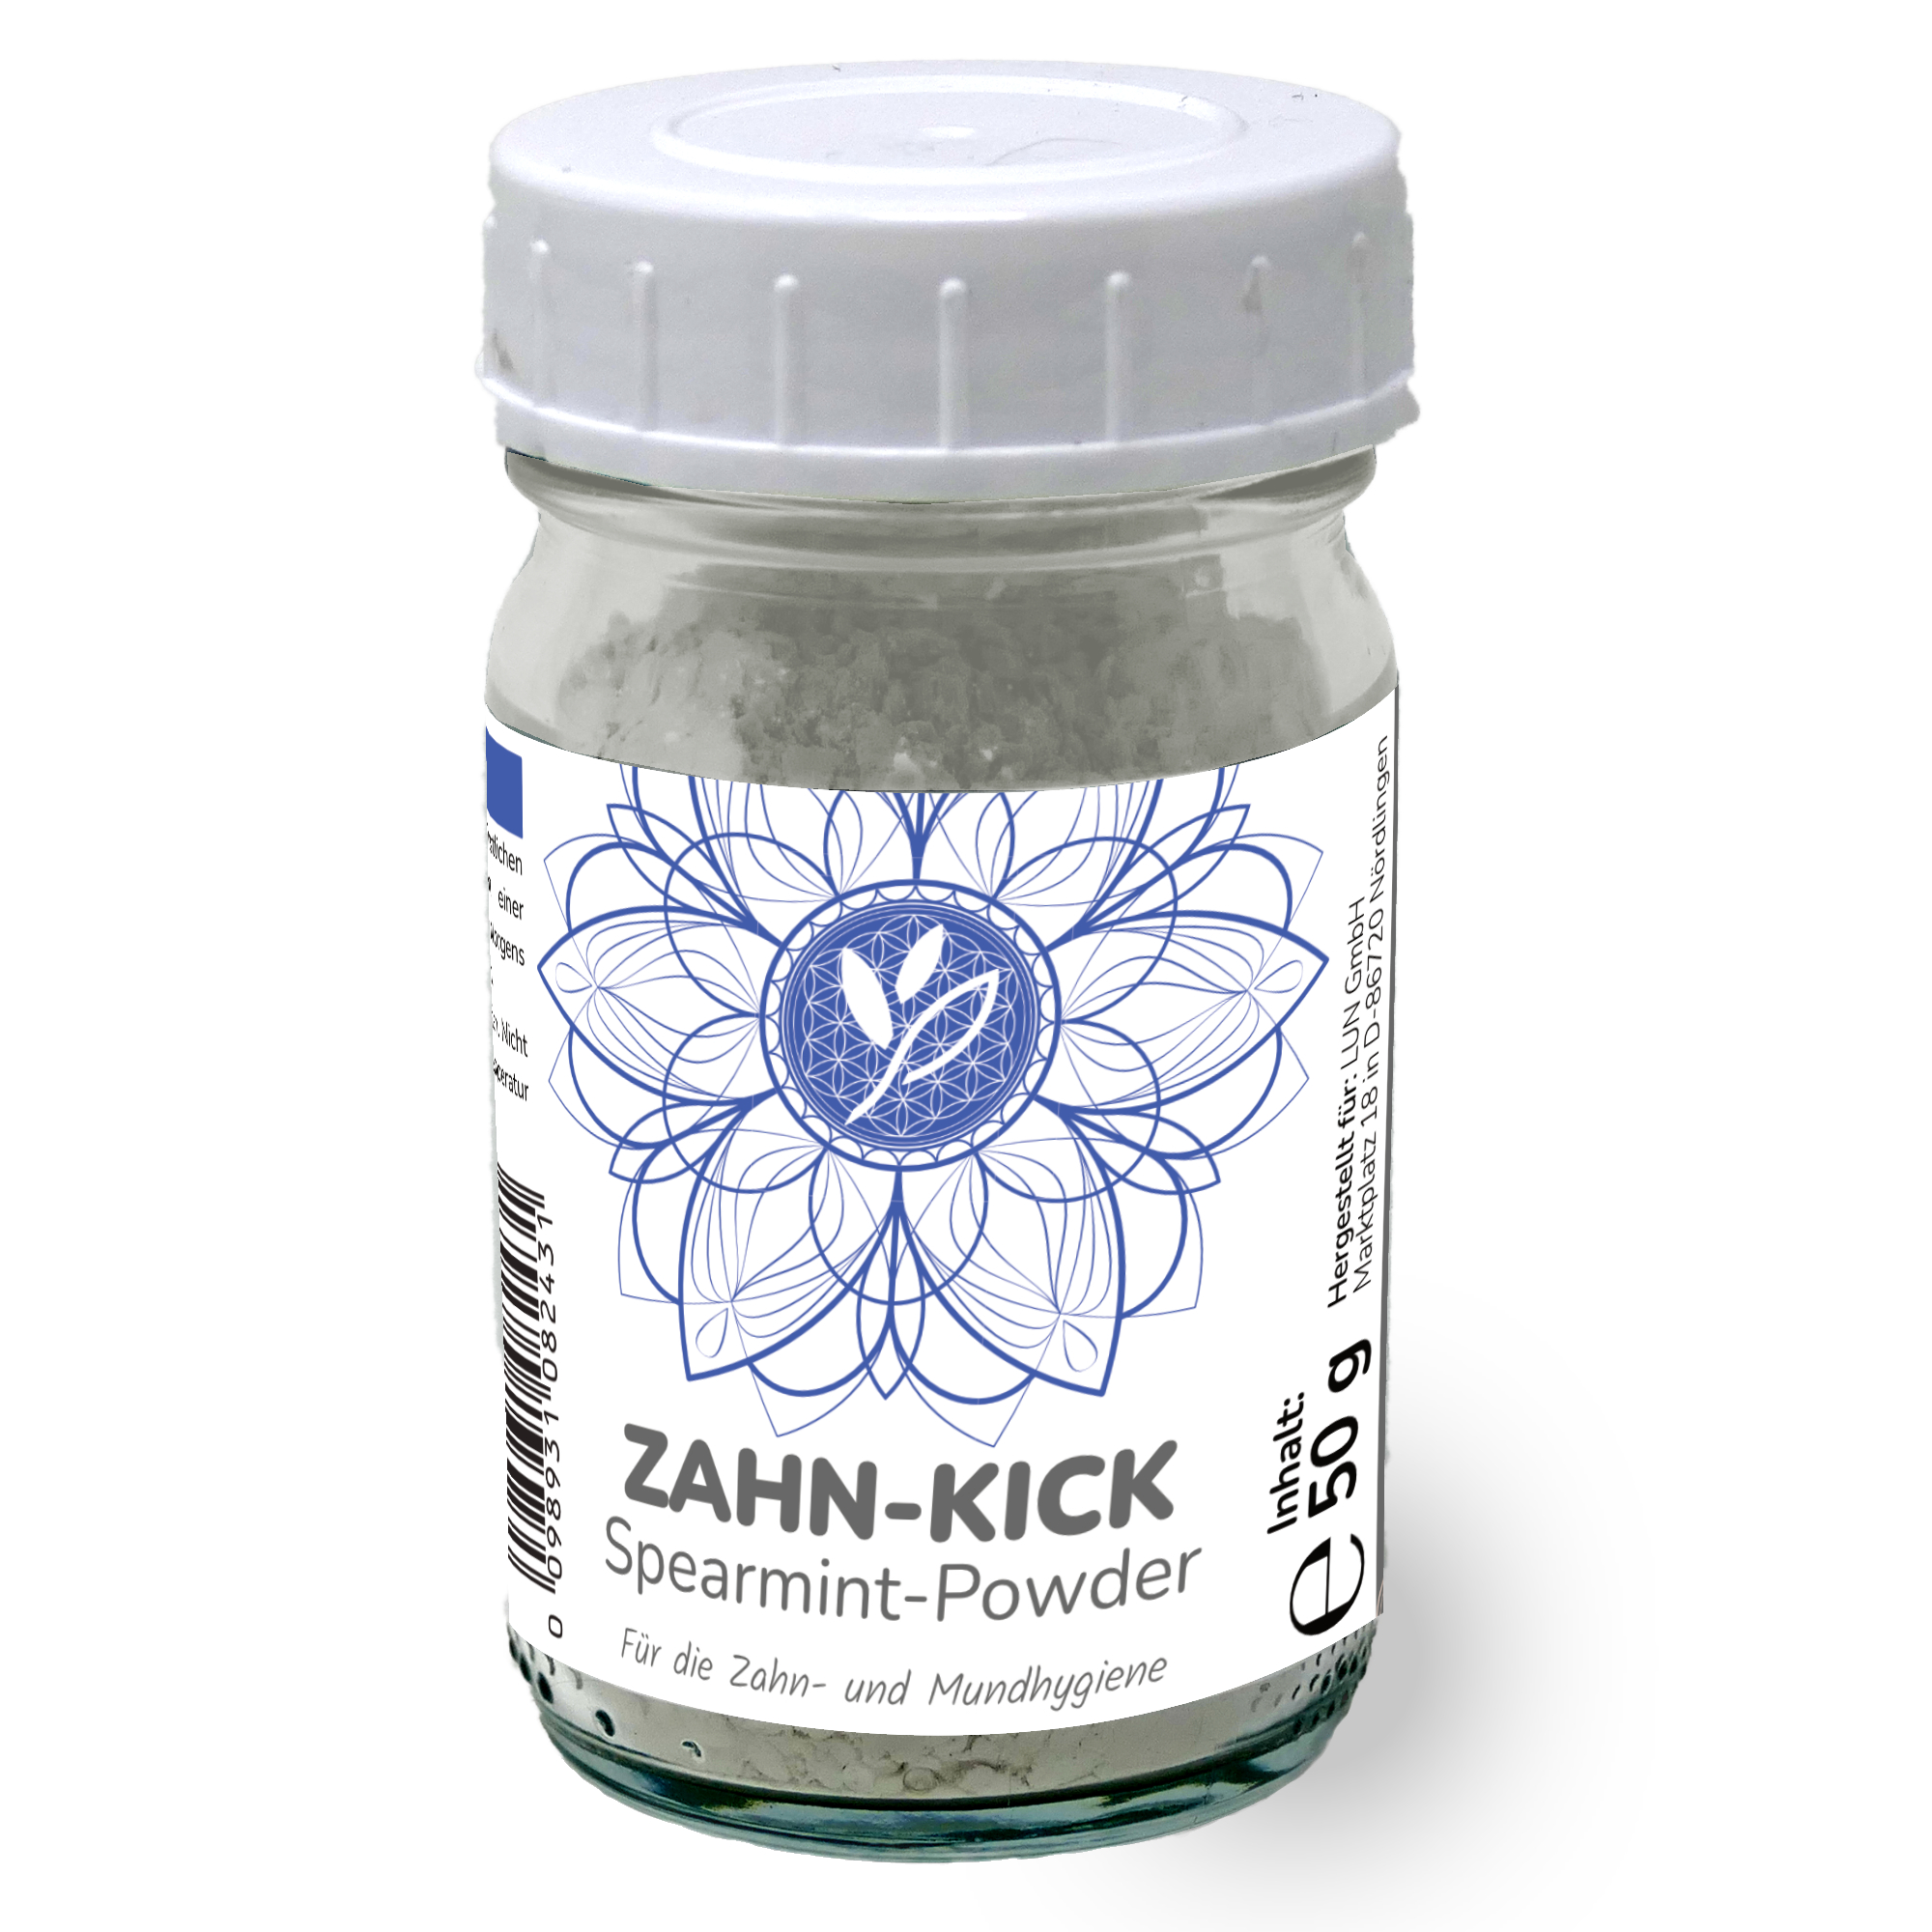 NATURKICK ZahnKick Intensiv Sparemint Powder Zahncremeersatz 50g